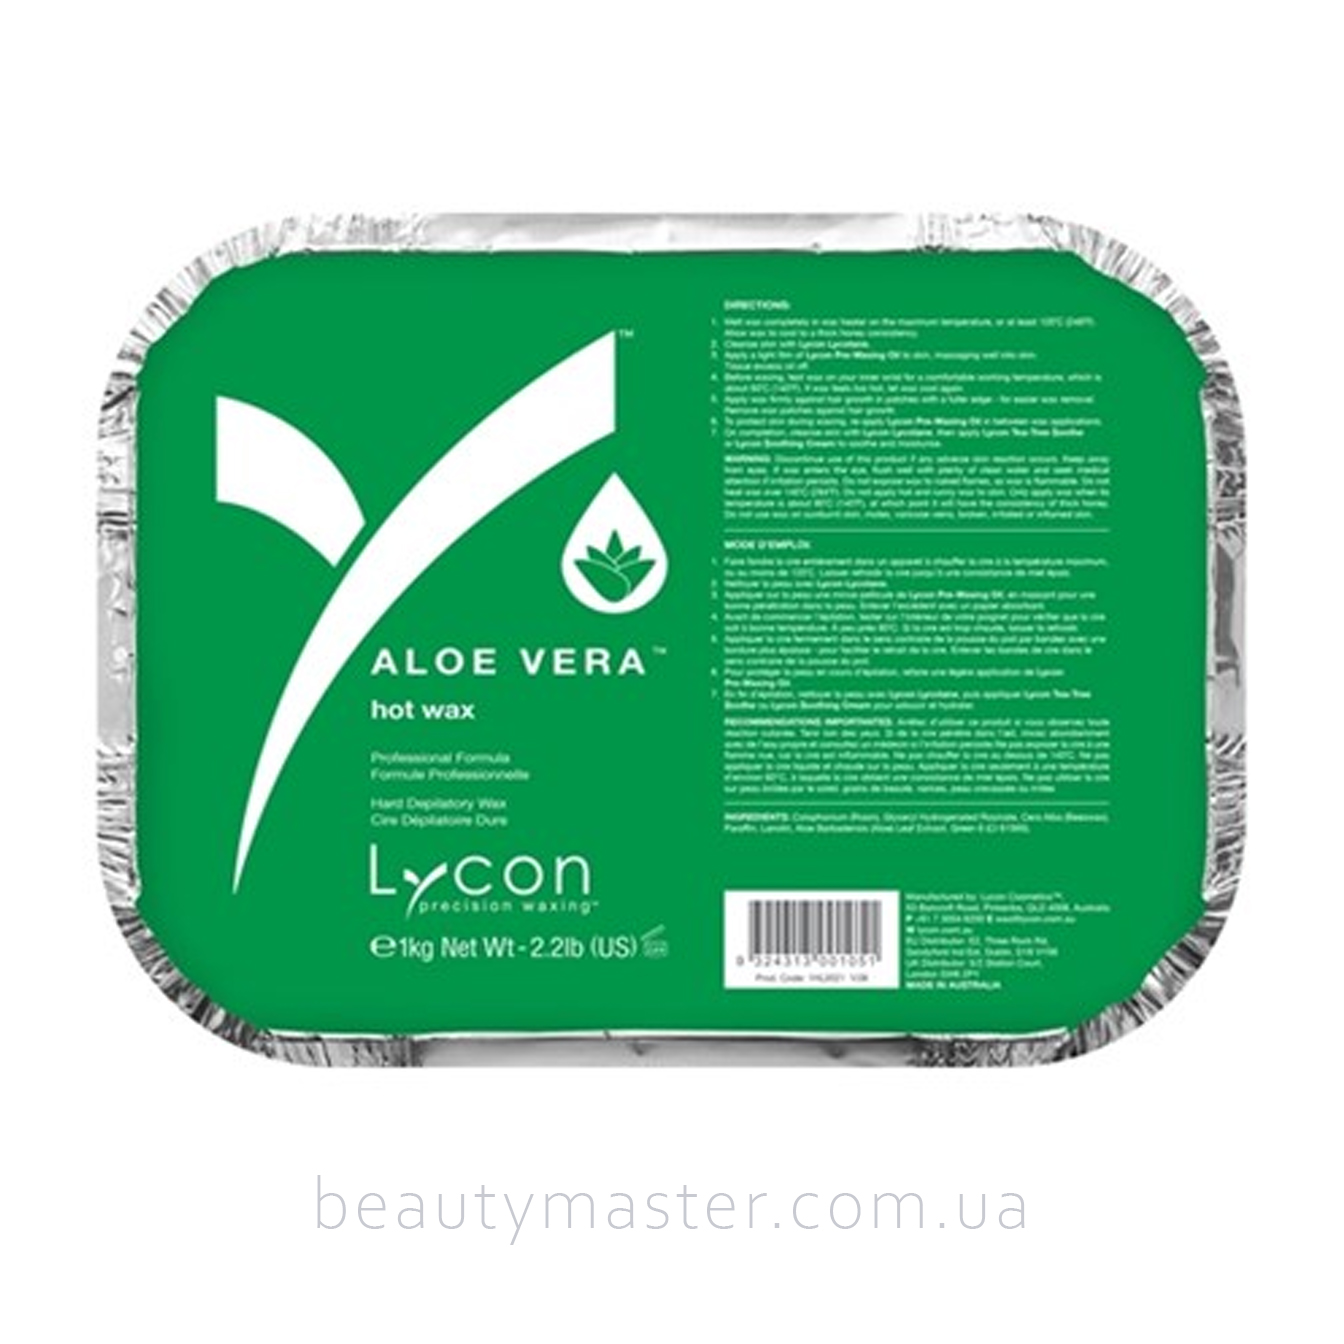 Lycon aloe vera hot wax 100г (расфасовка)